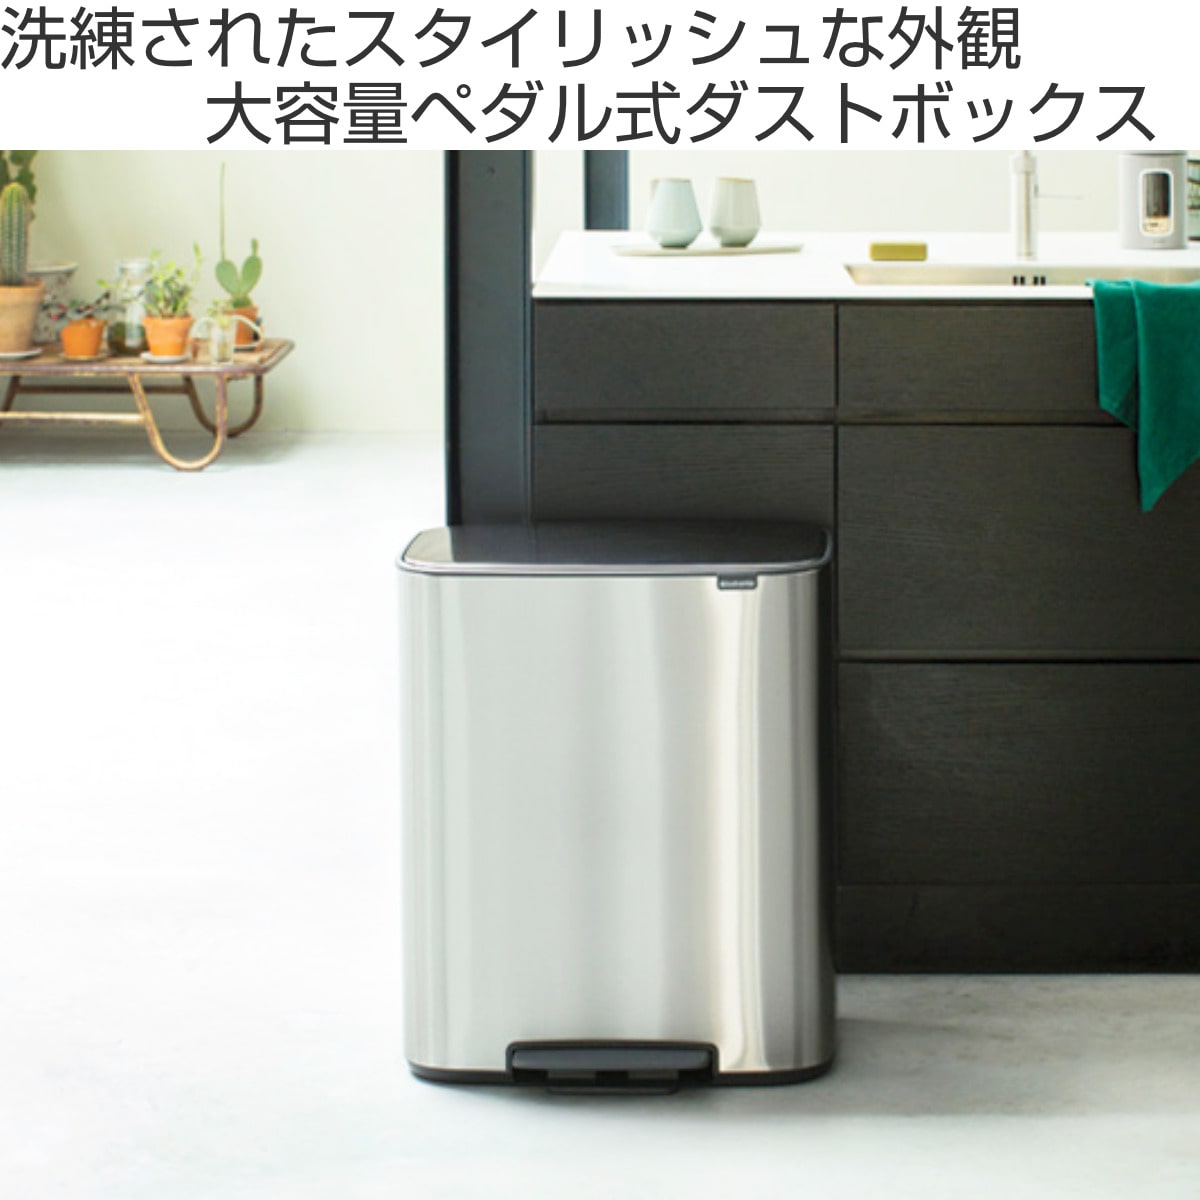 キッチン用品 brabantia ペダル式ゴミ箱 ブラック 20L 114106